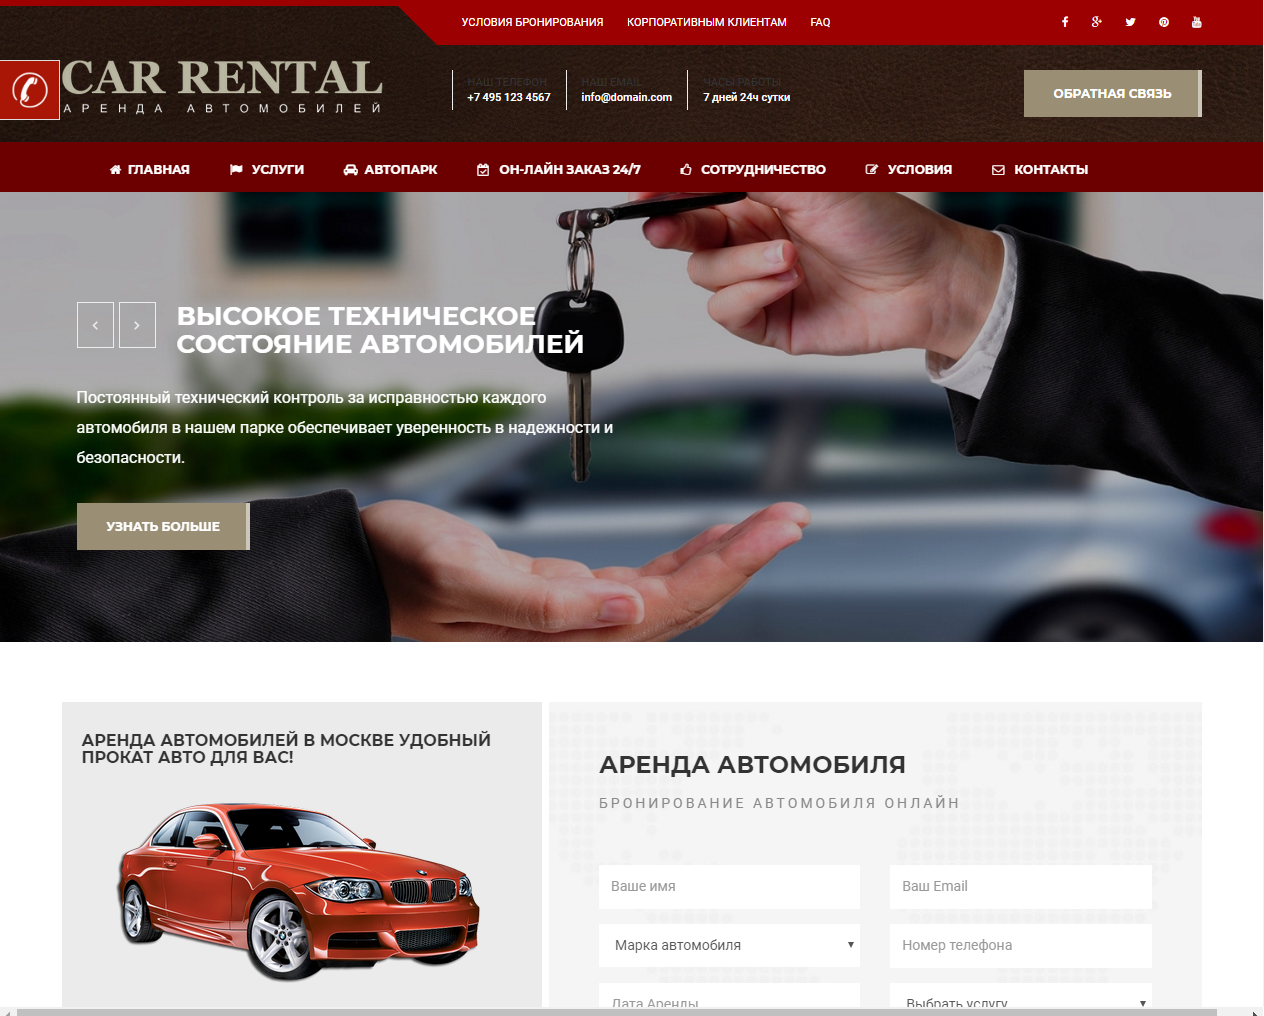 Код аренды авто. Шаблон автомобильного сайта. Сайты по продаже автомобилей. Макет сайта авто. Авто для сайта.